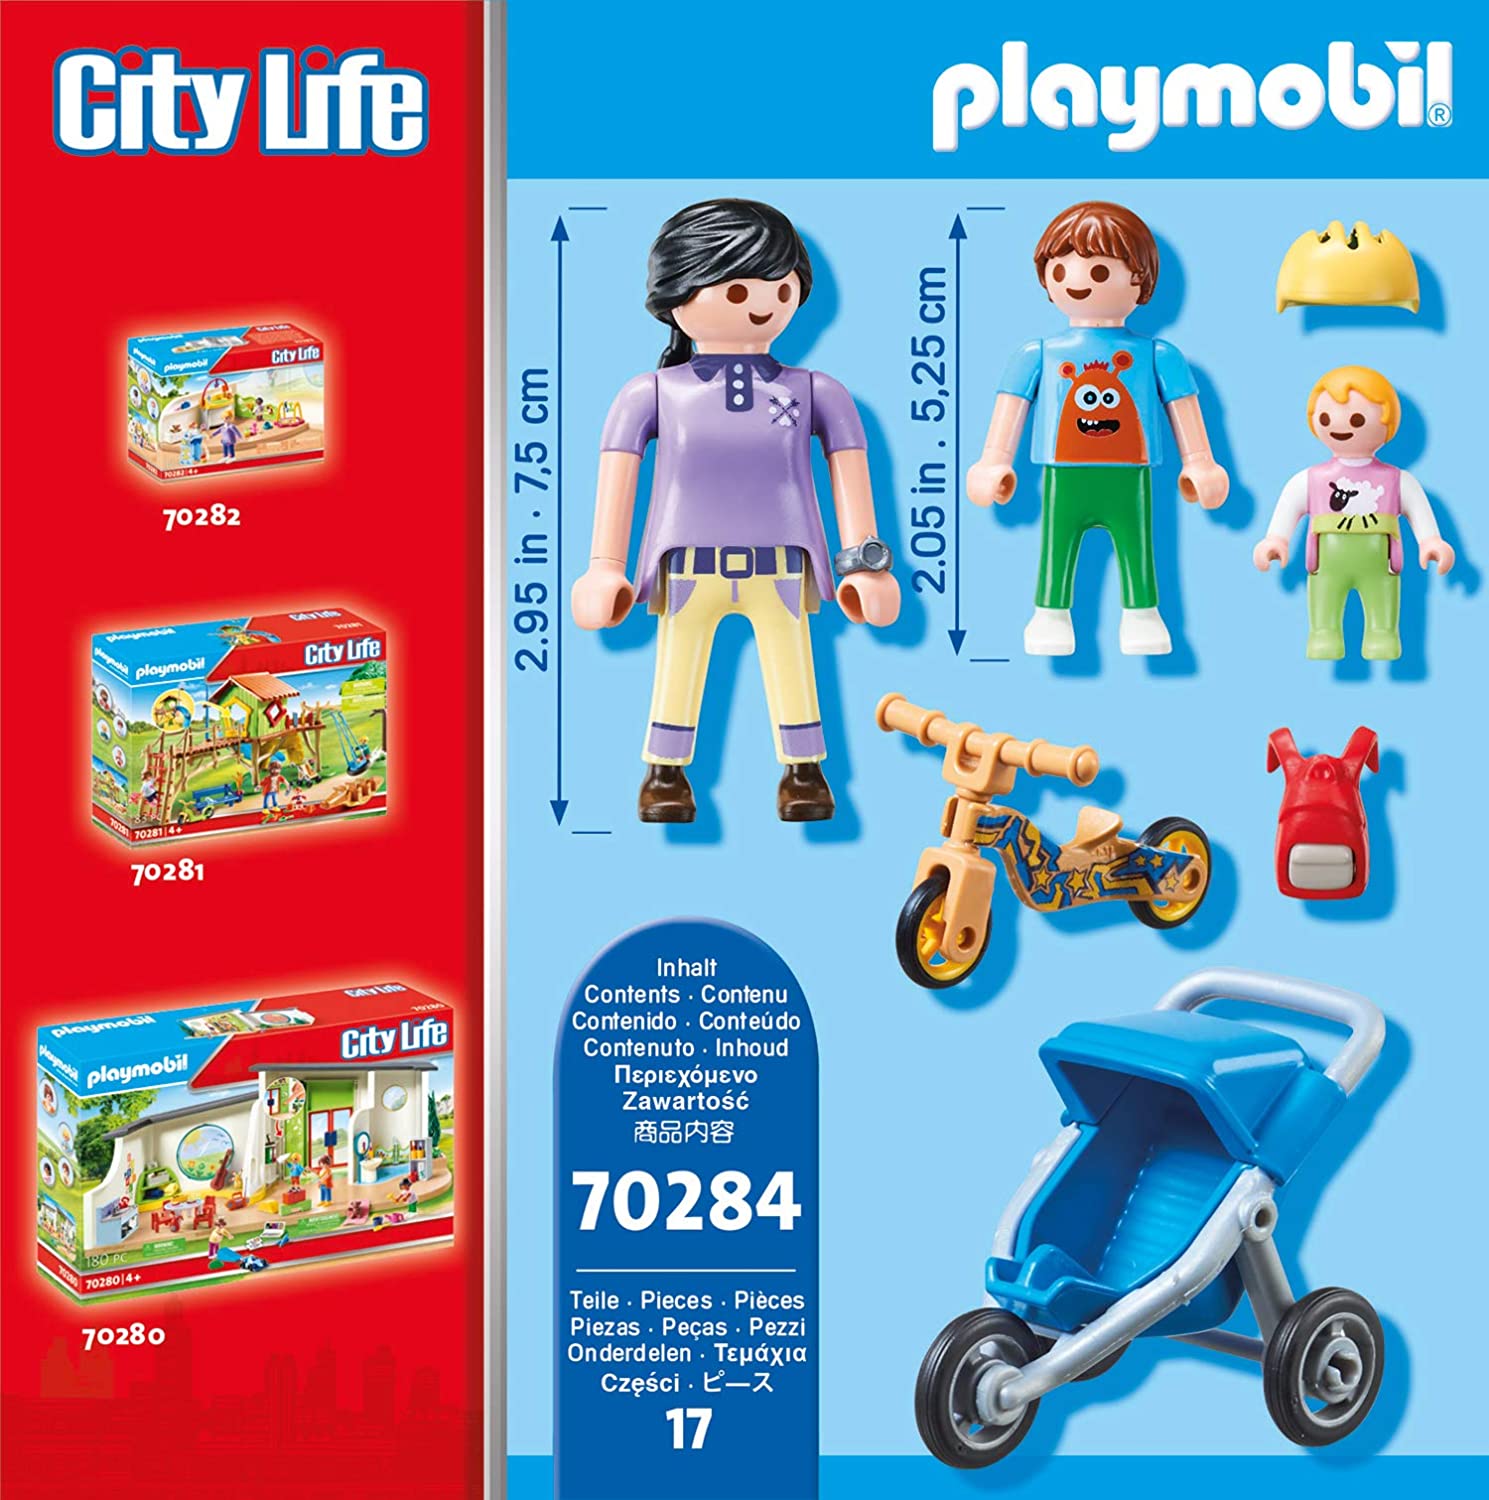 Classe éducative sur l'écologie - Playmobil City Life 71331 - La